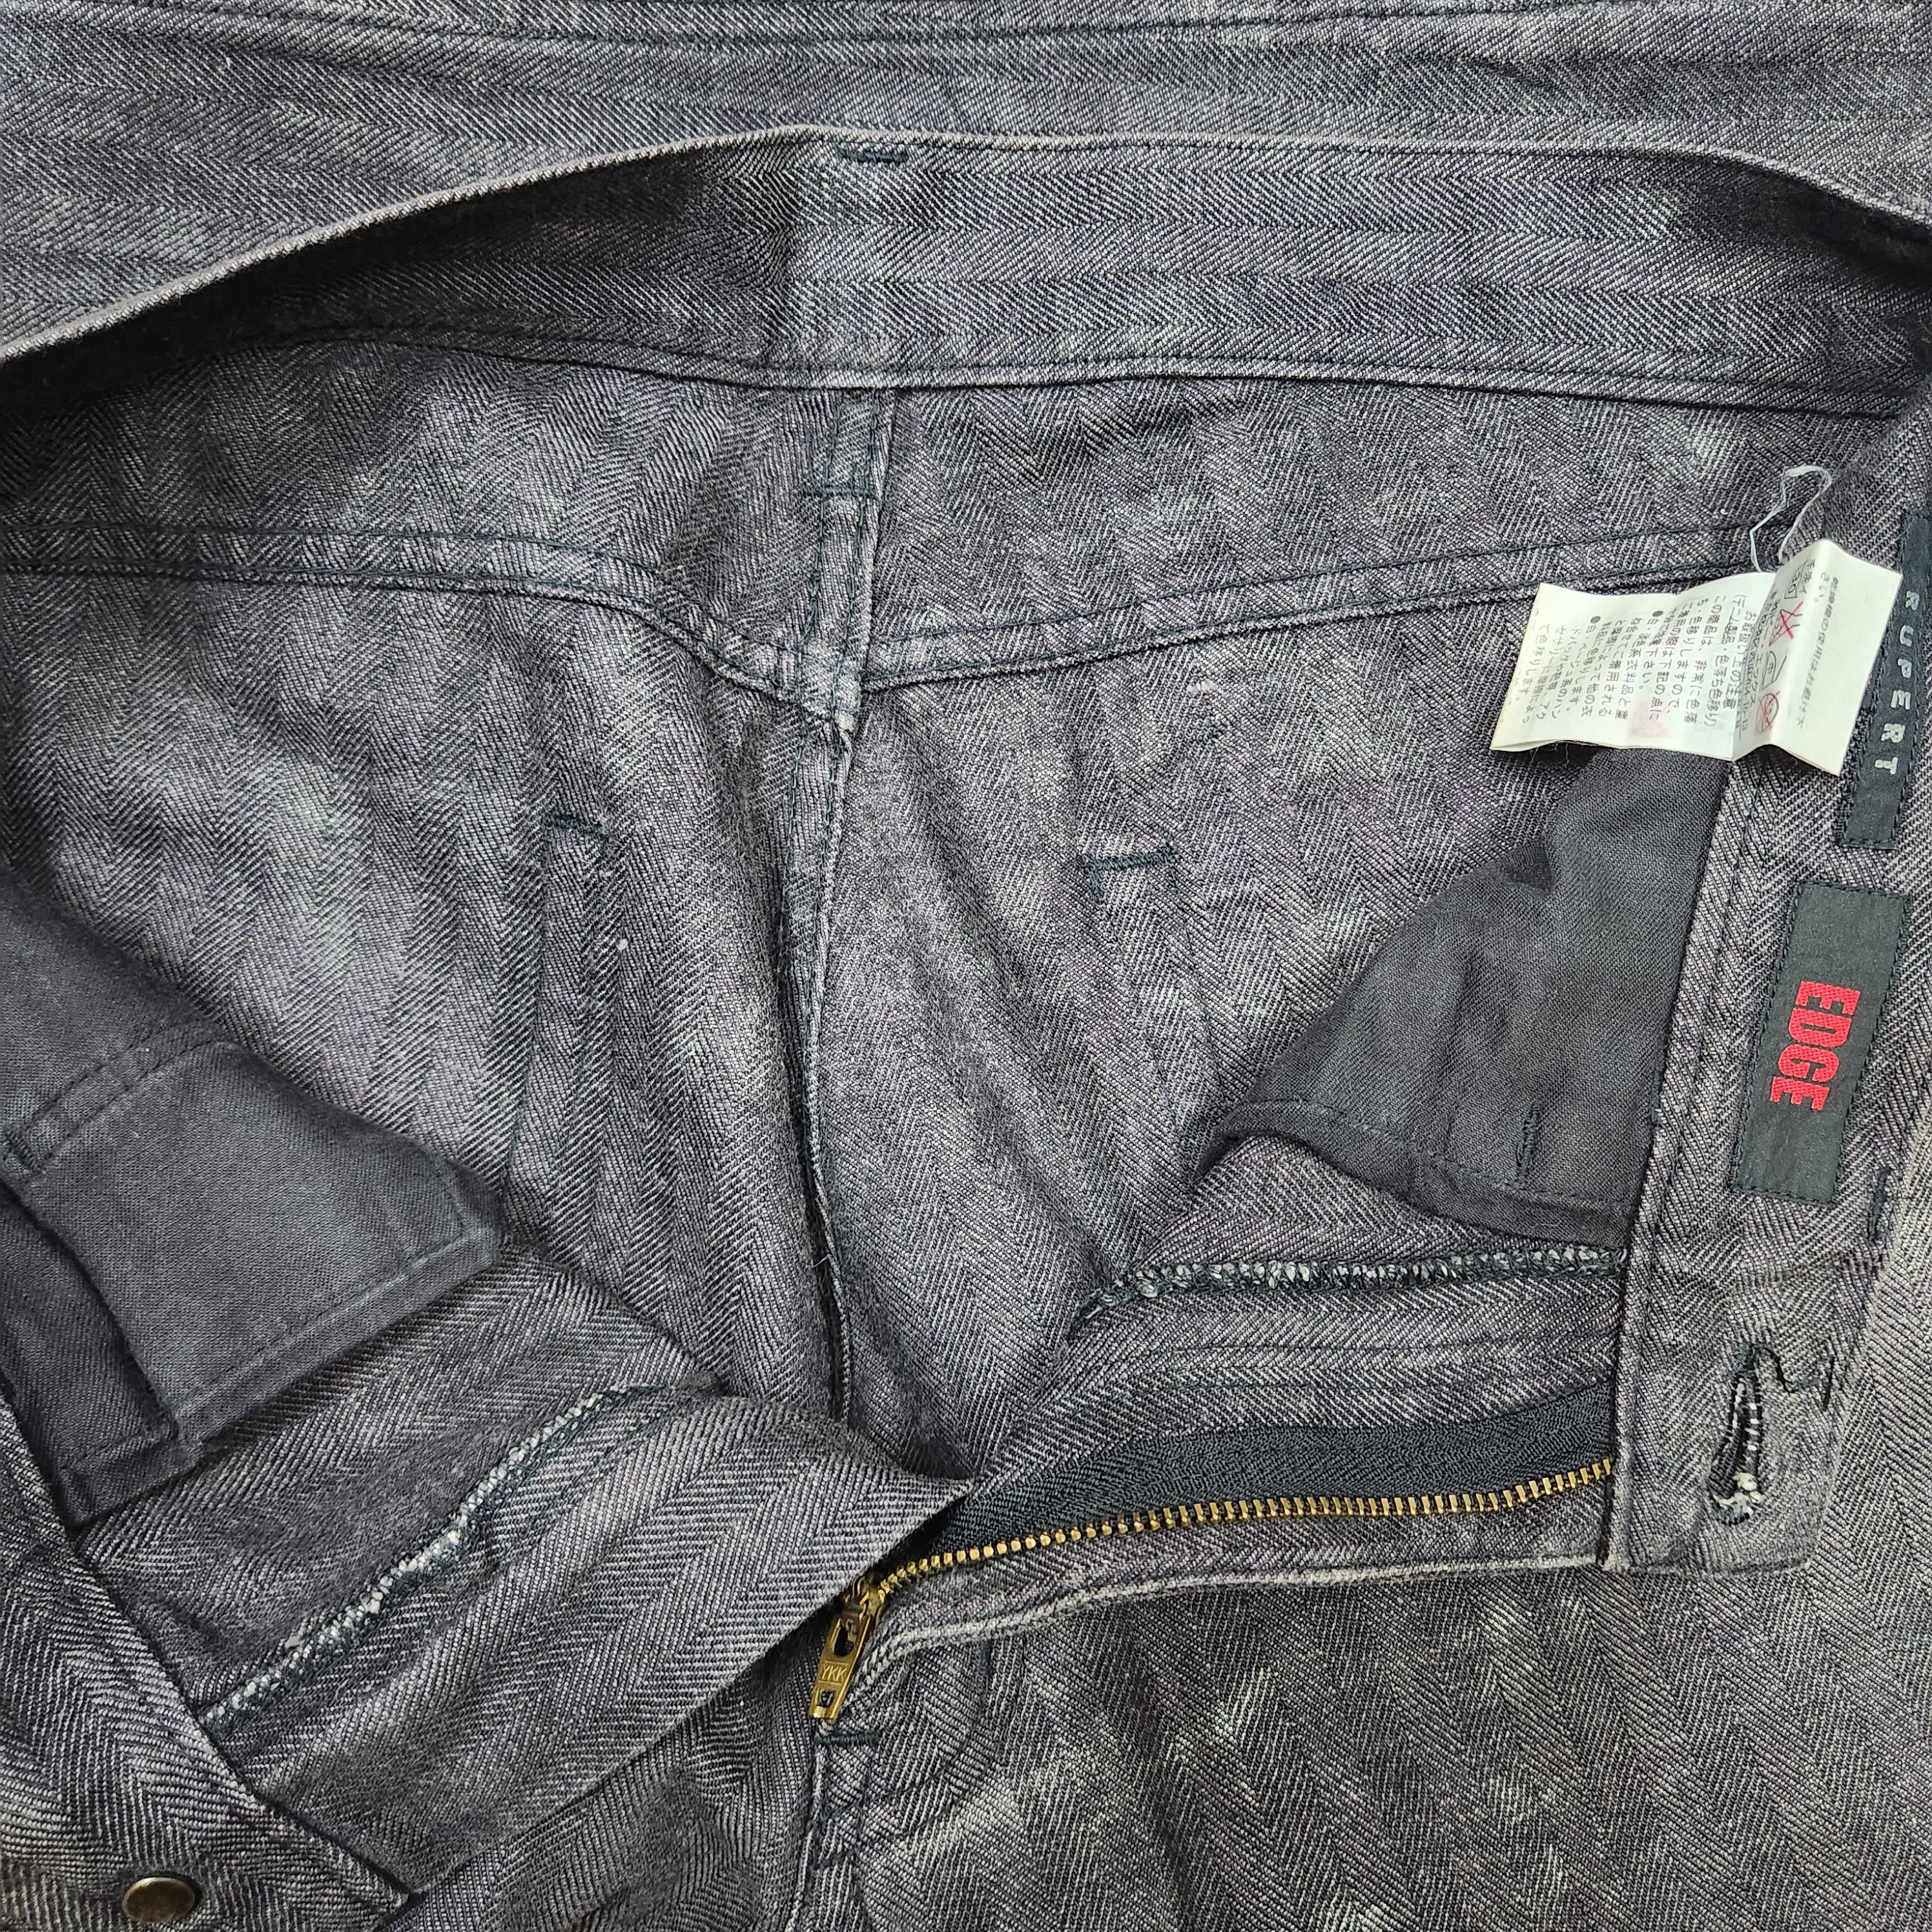 Japanese Brand - Flared Edge Rupert Denim Japan Jeans 70s Style - 16